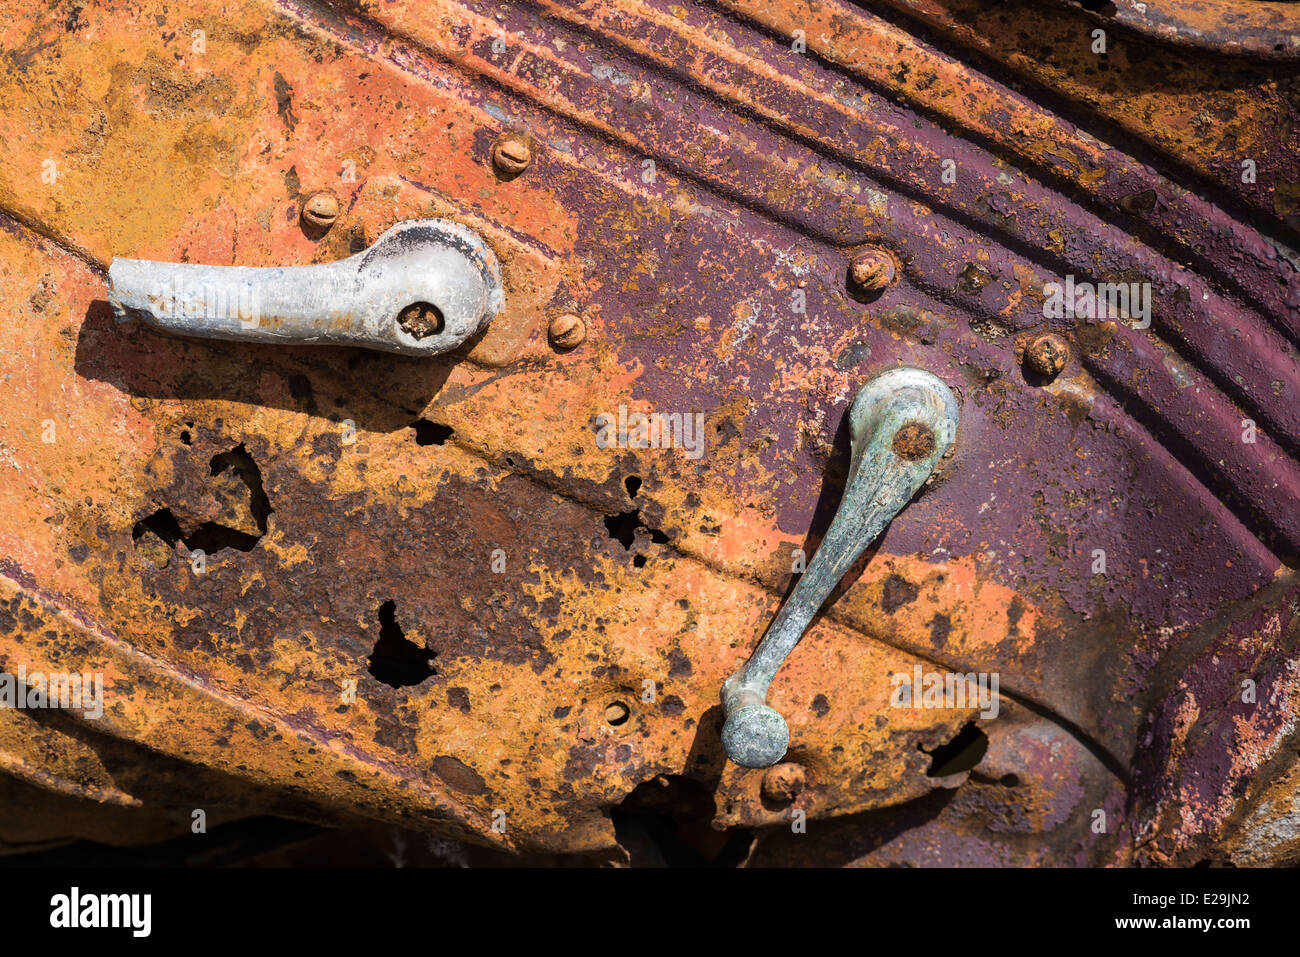 Rusty porta e maniglie su una vecchia auto abbandonate, Oregon. Foto Stock